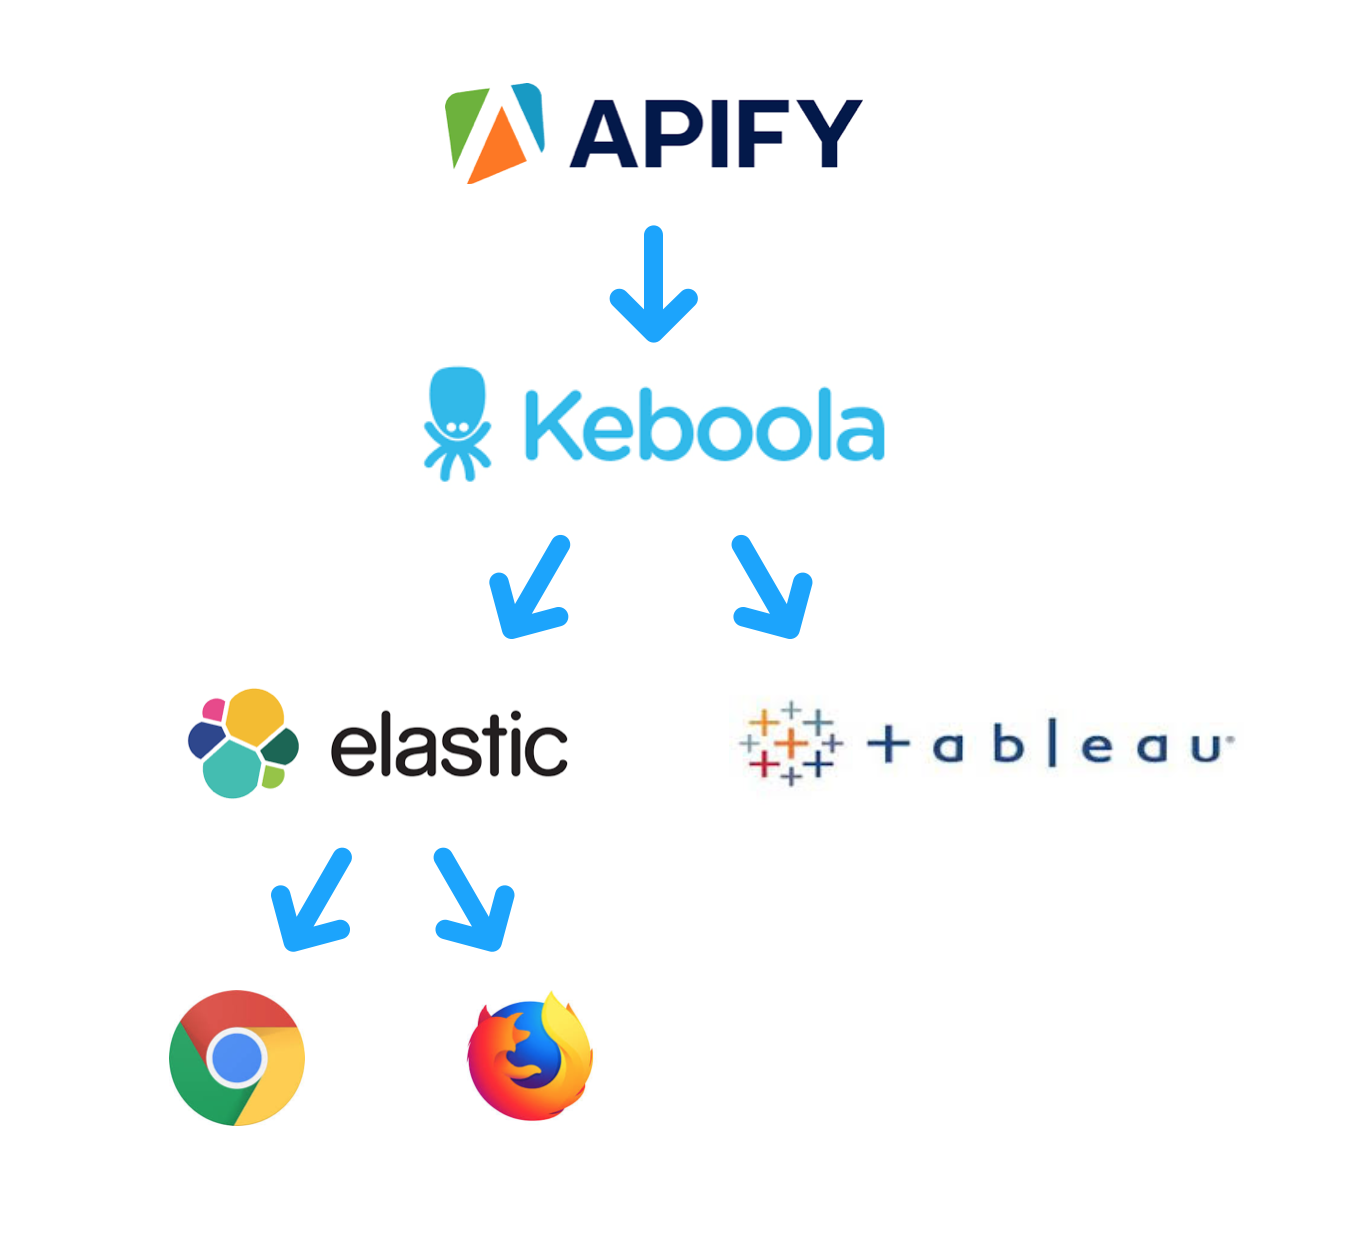 stromový diagram zobrazující systémovou strukturu Hlídaču Shopů: Apify ukazující na Keboolu, která se dělí na tableau a elastic, což dále vede k Chrome a Firefoxu